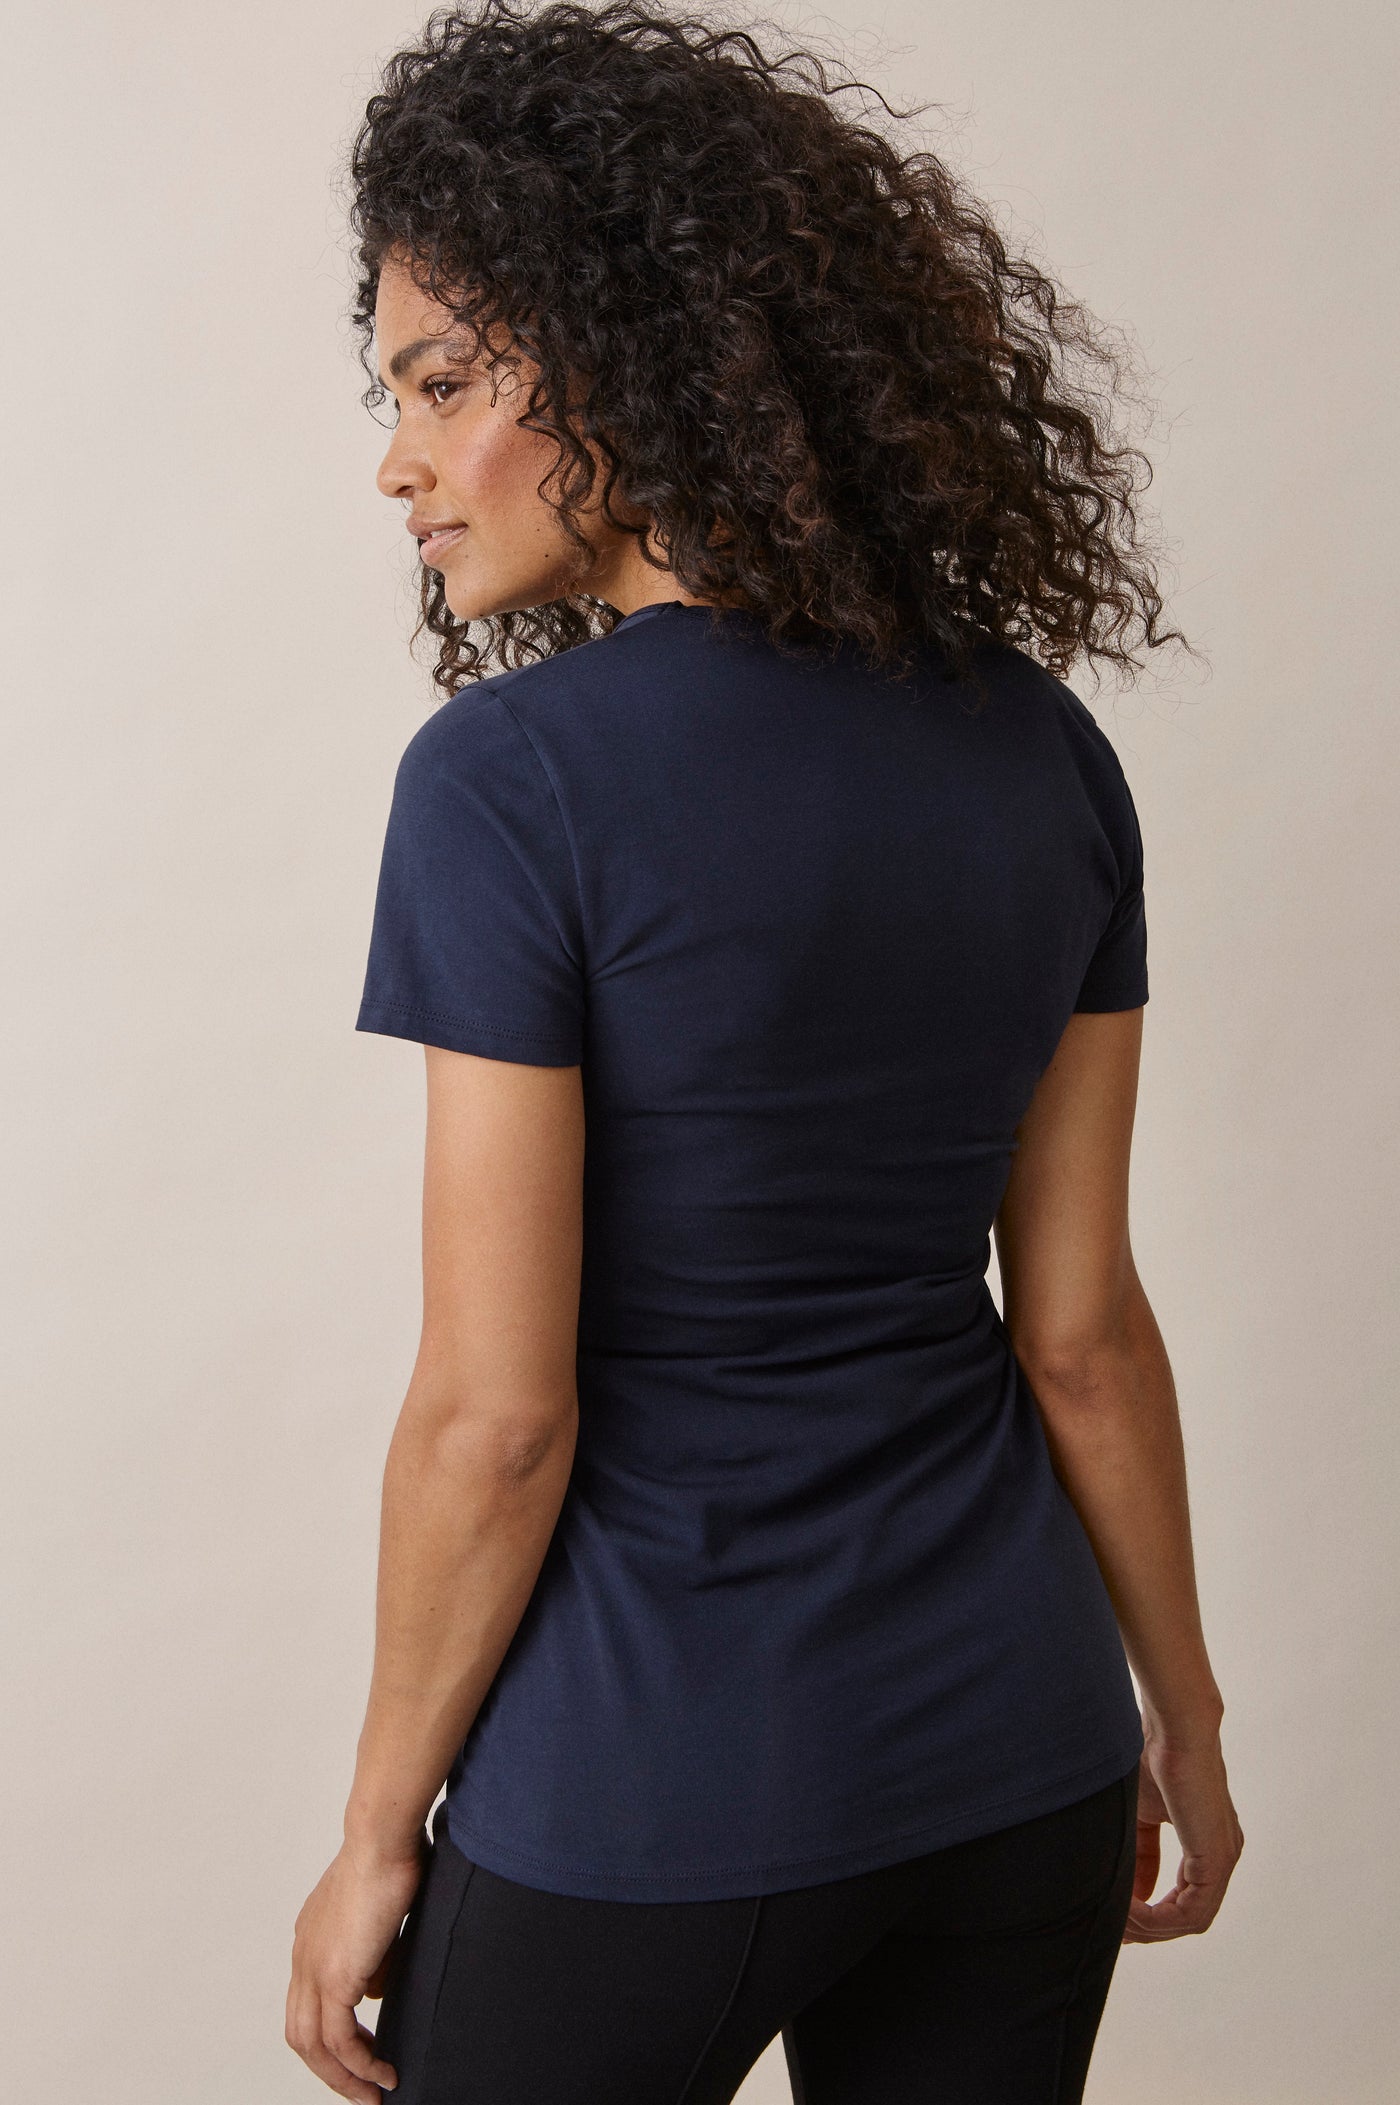 Femme de dos portant le t-shirt Le Classique manches courtes de grossesse et d'allaitement en coton bio certifié GOTS, coloris marine.